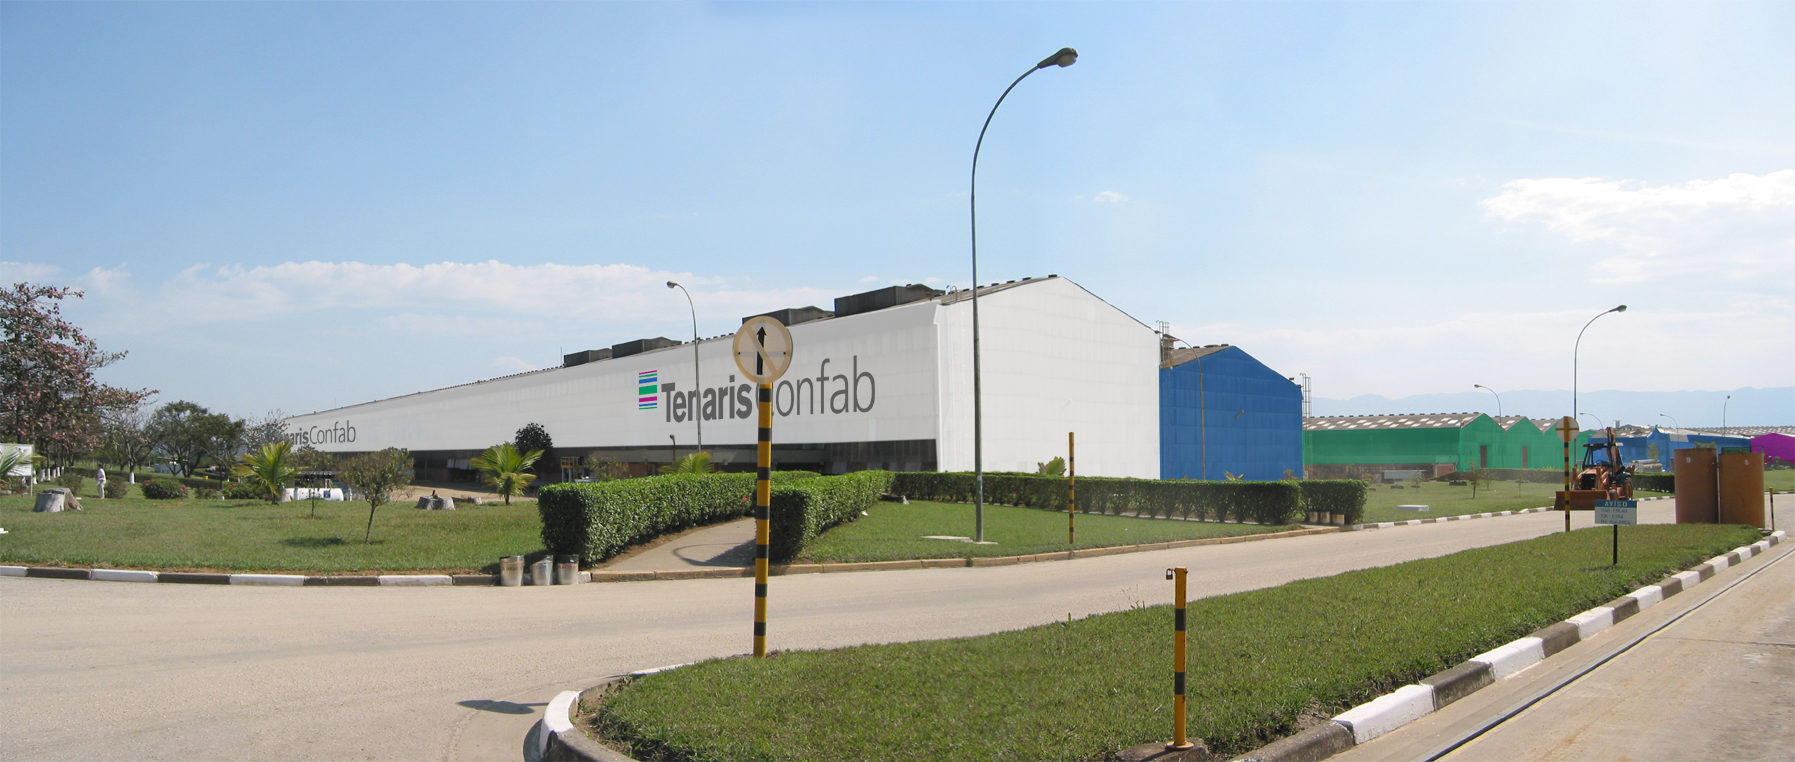 Tenaris Confab Industrial Plant in Pindamonhagaba, Brazil. Signing